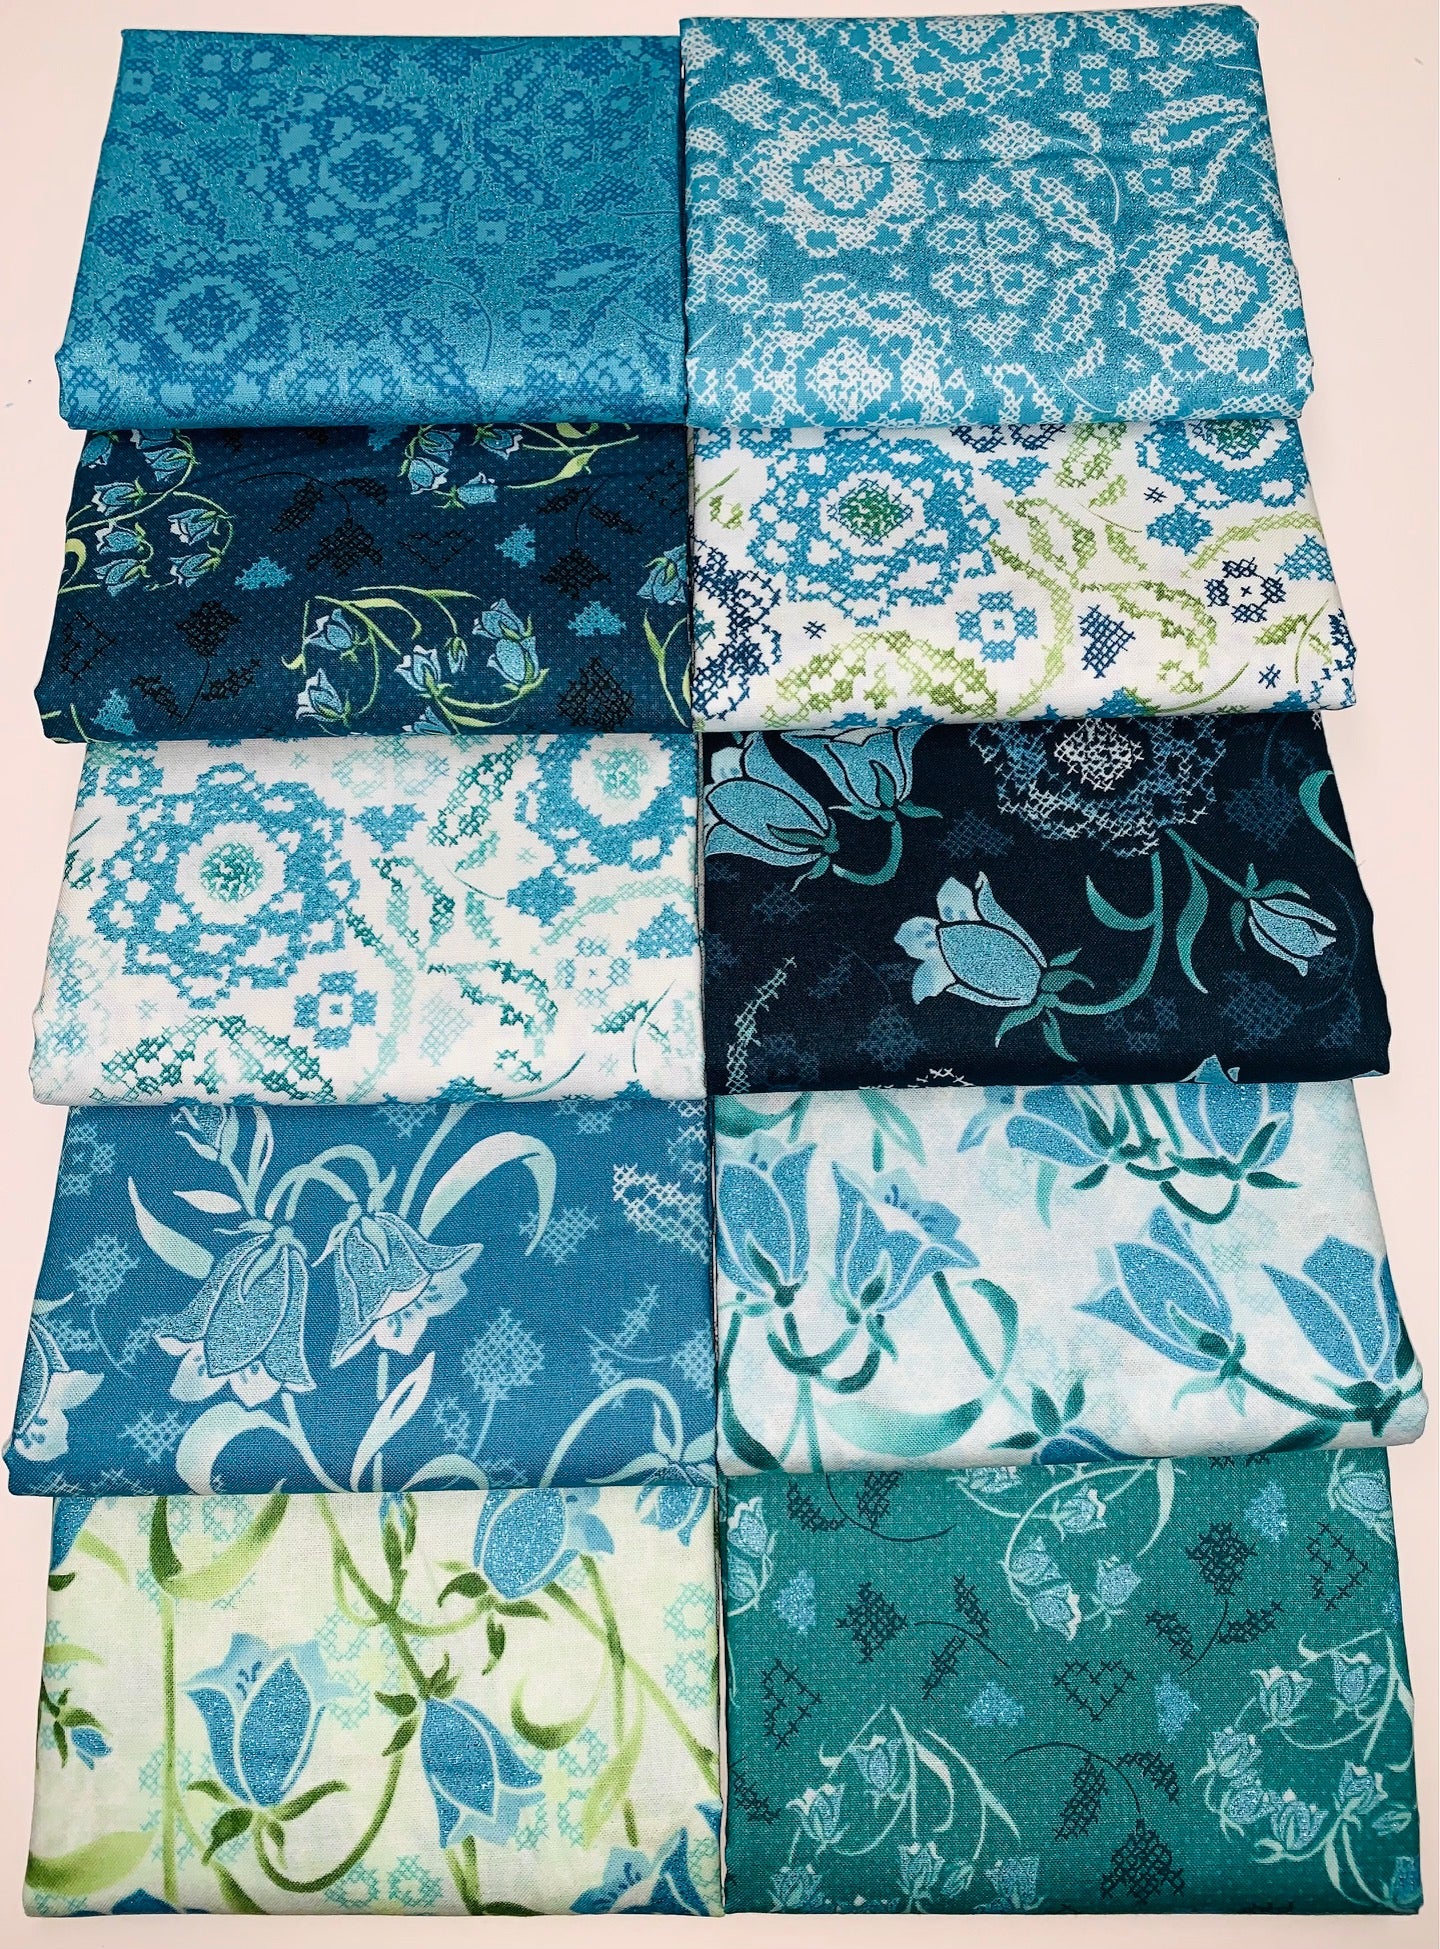 RJR "Blue Belle" Shimmer Half-yard Bundle - 10 Fabrics, 5 Total Yards